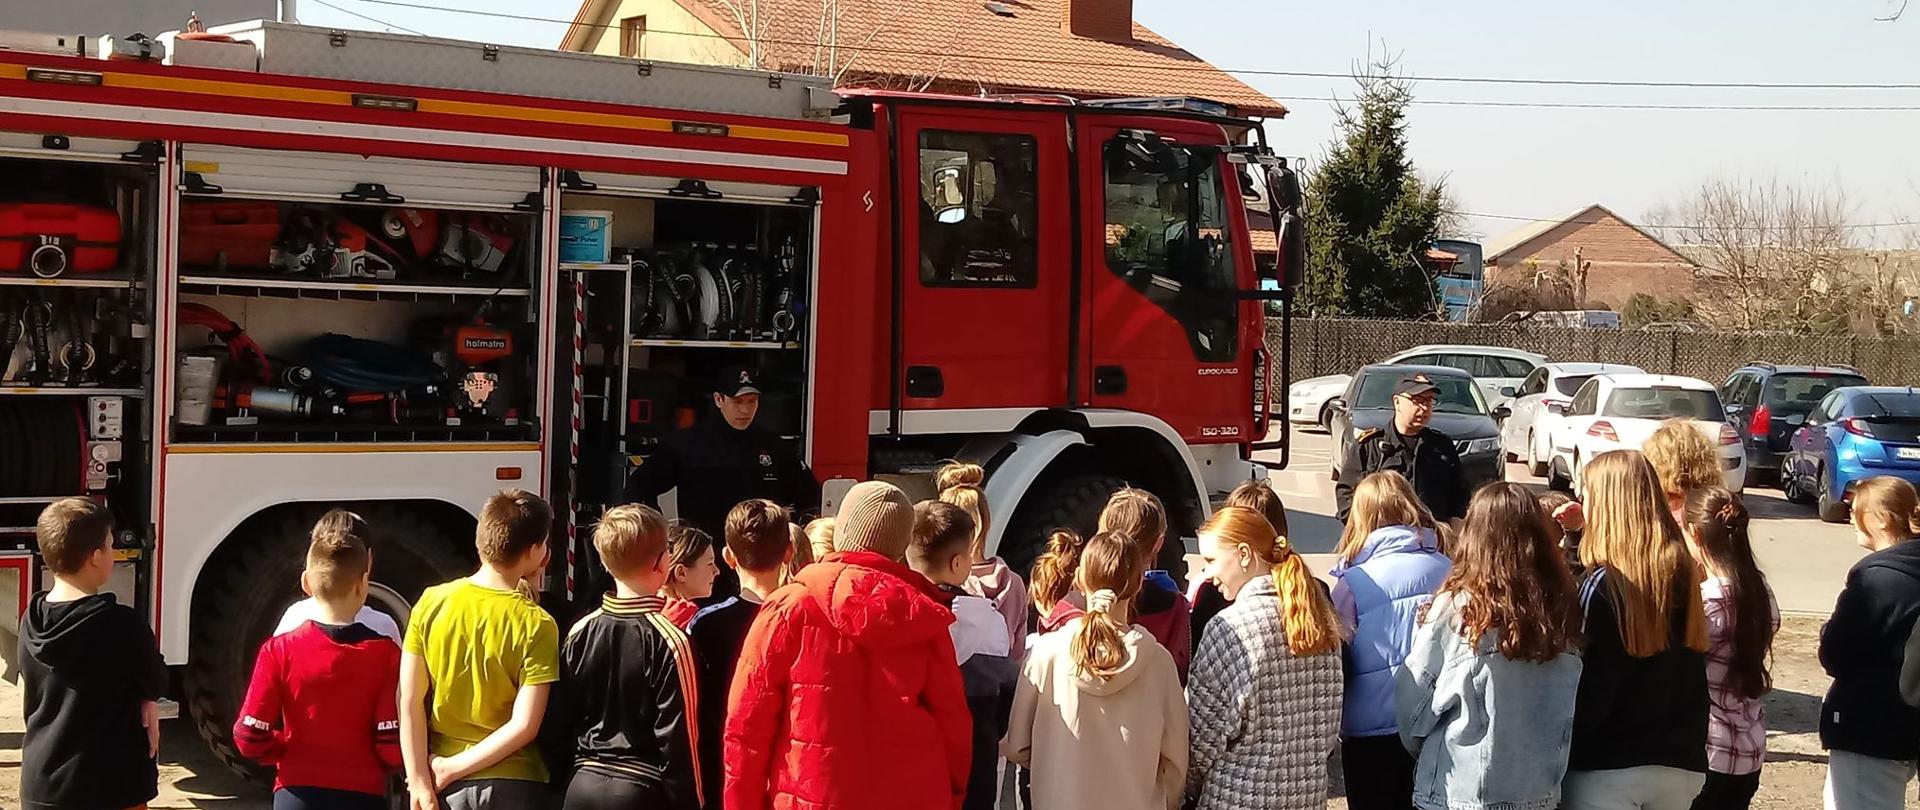 Na zdjęciu widoczny jest czerwony samochód pożarniczy z otwartymi skrytkami sprzętowymi. W środku znajduje się sprzęt ratowniczo-gaśniczy. Przy samochodzie zgrupowane są dzieci. Dzieci w różnym wieku słuchają dwóch strażaków opowiadających o sprzęcie oraz zawodzie strażaka. W tle widoczne jest błękitne niebo oraz zabudowania.